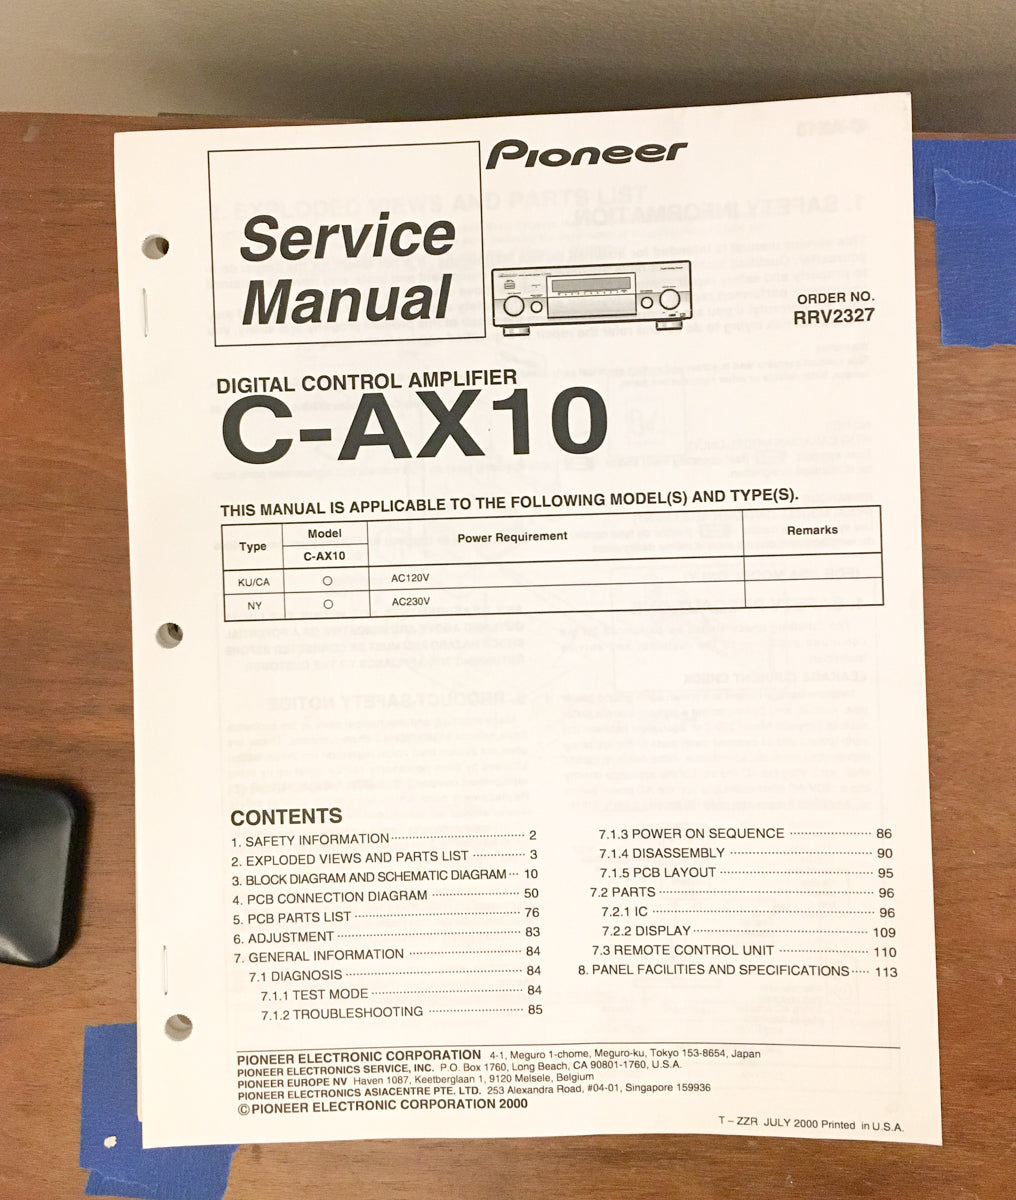 Pioneer C-AX10 Control Amplifier Service Manual *Original*